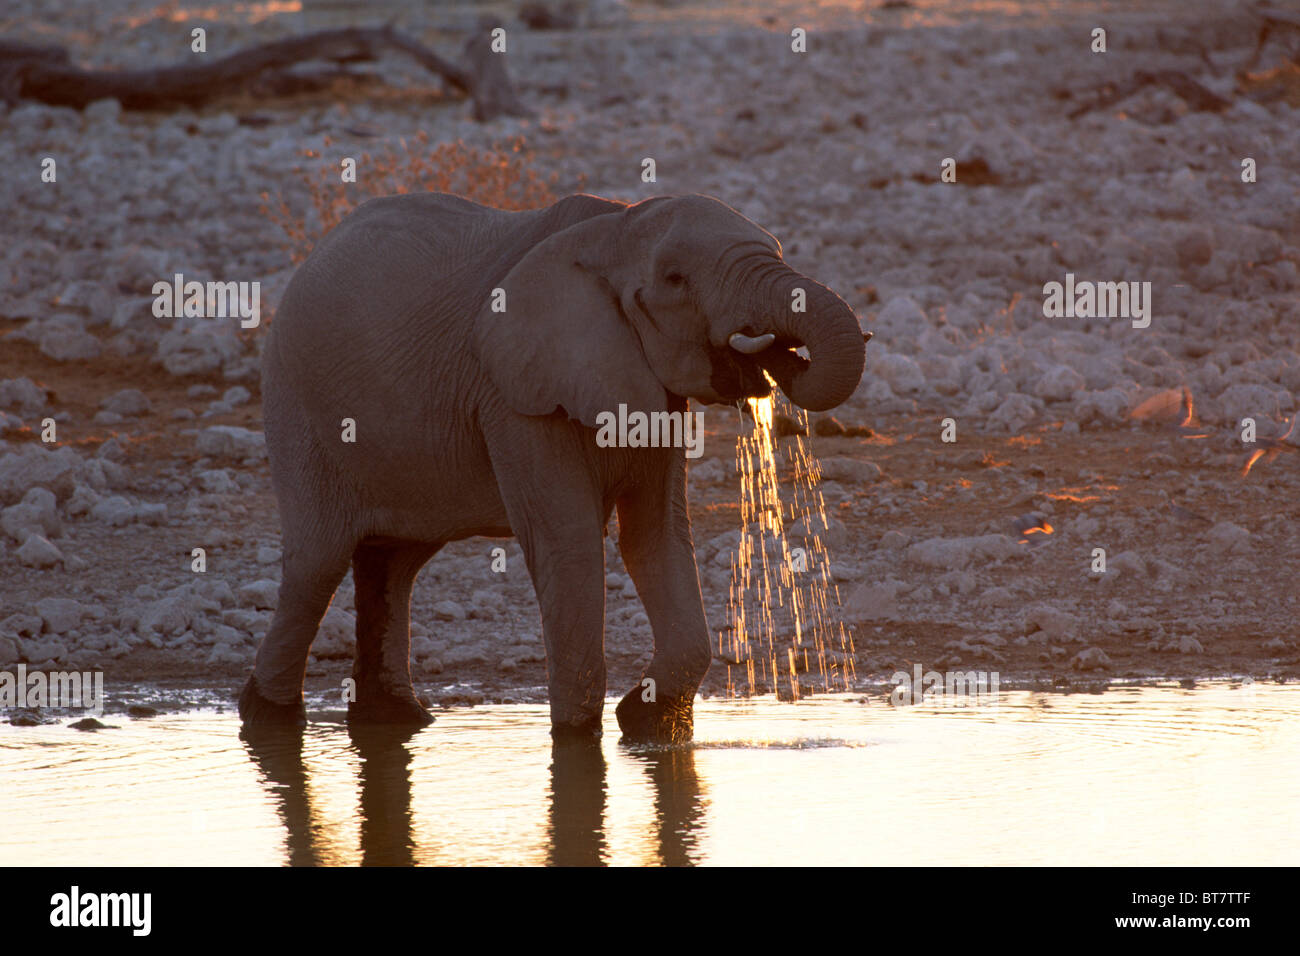 Bush africain Elephant (Loxodonta africana) de l'eau potable dans la dernière lumière du soir, Etosha National Park, Namibie, Afrique Banque D'Images